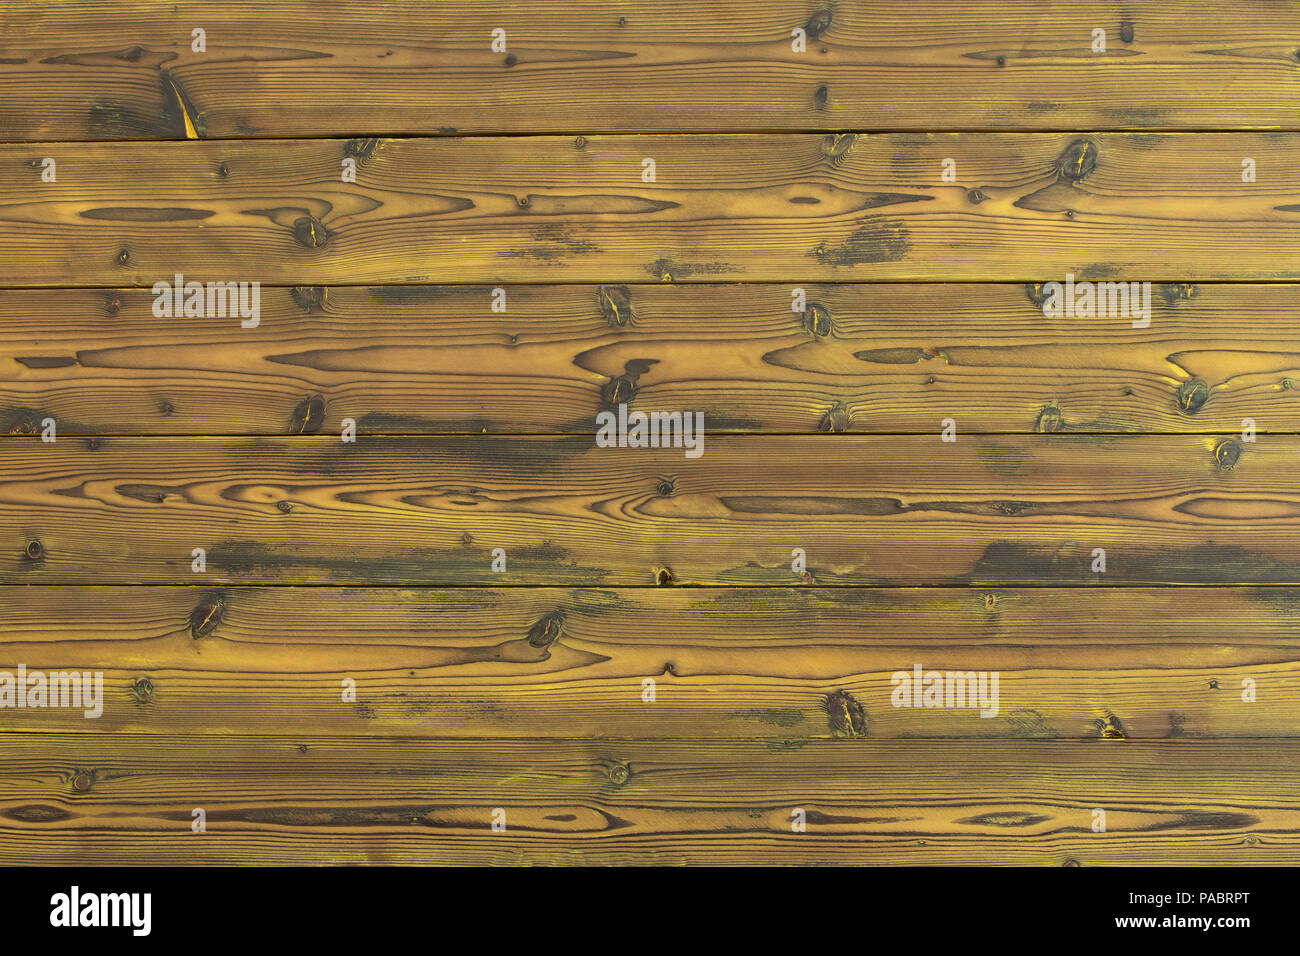 La texture du bois de fond de teint jaune en pin avec noeuds et wood grain pattern dans un full frame view with copy space Banque D'Images